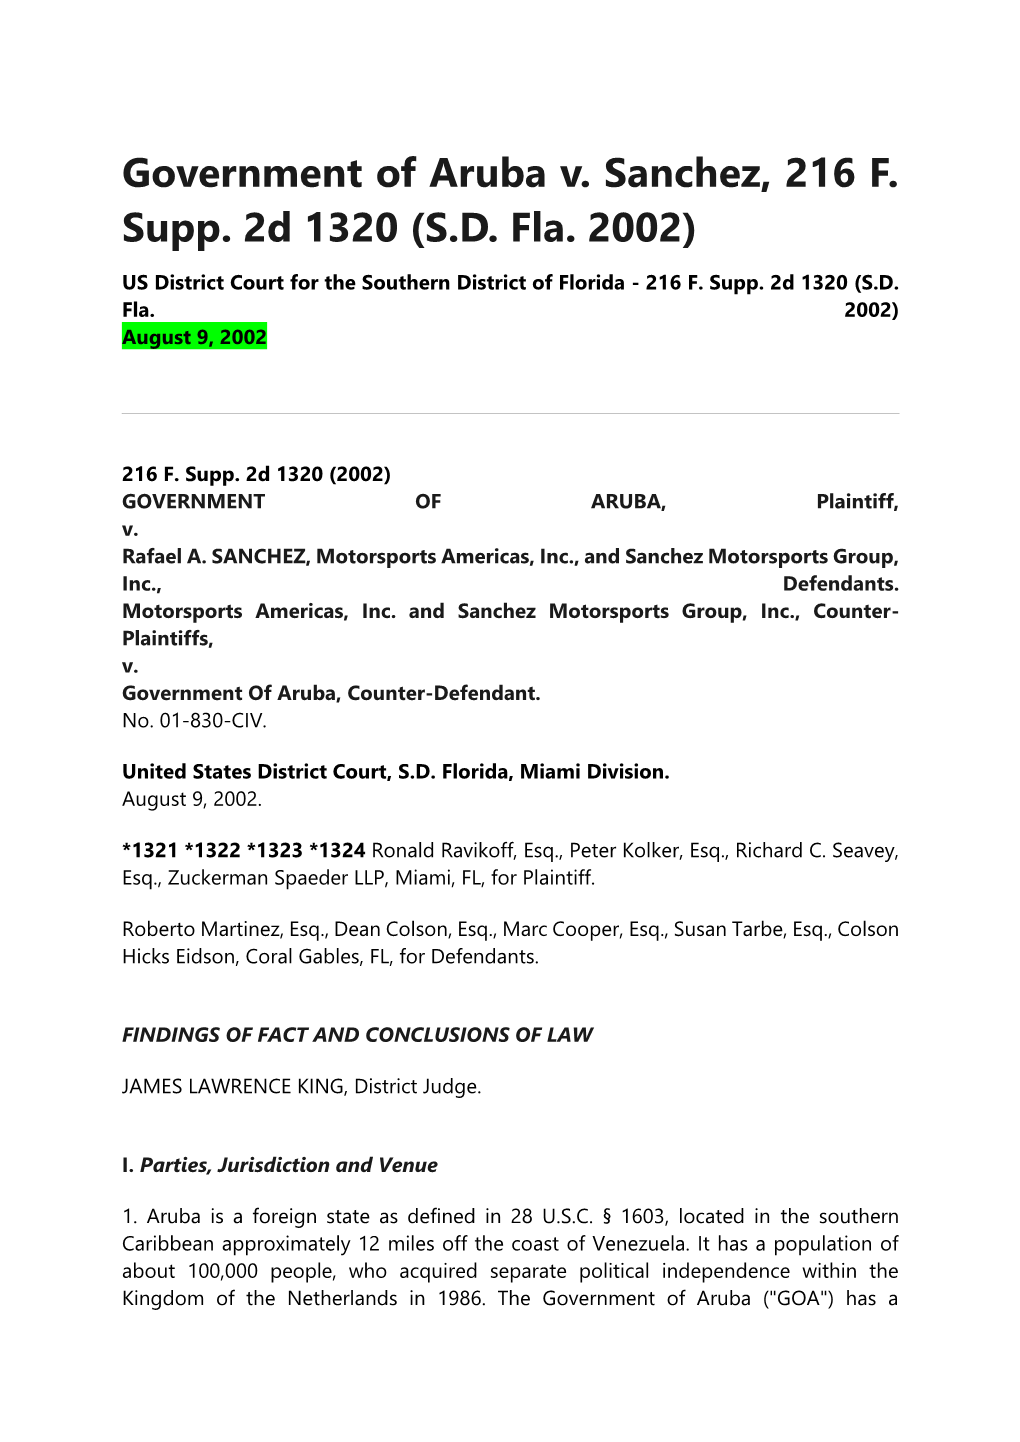 Government of Aruba V. Sanchez, 216 F. Supp. 2D 1320 (S.D. Fla. 2002)